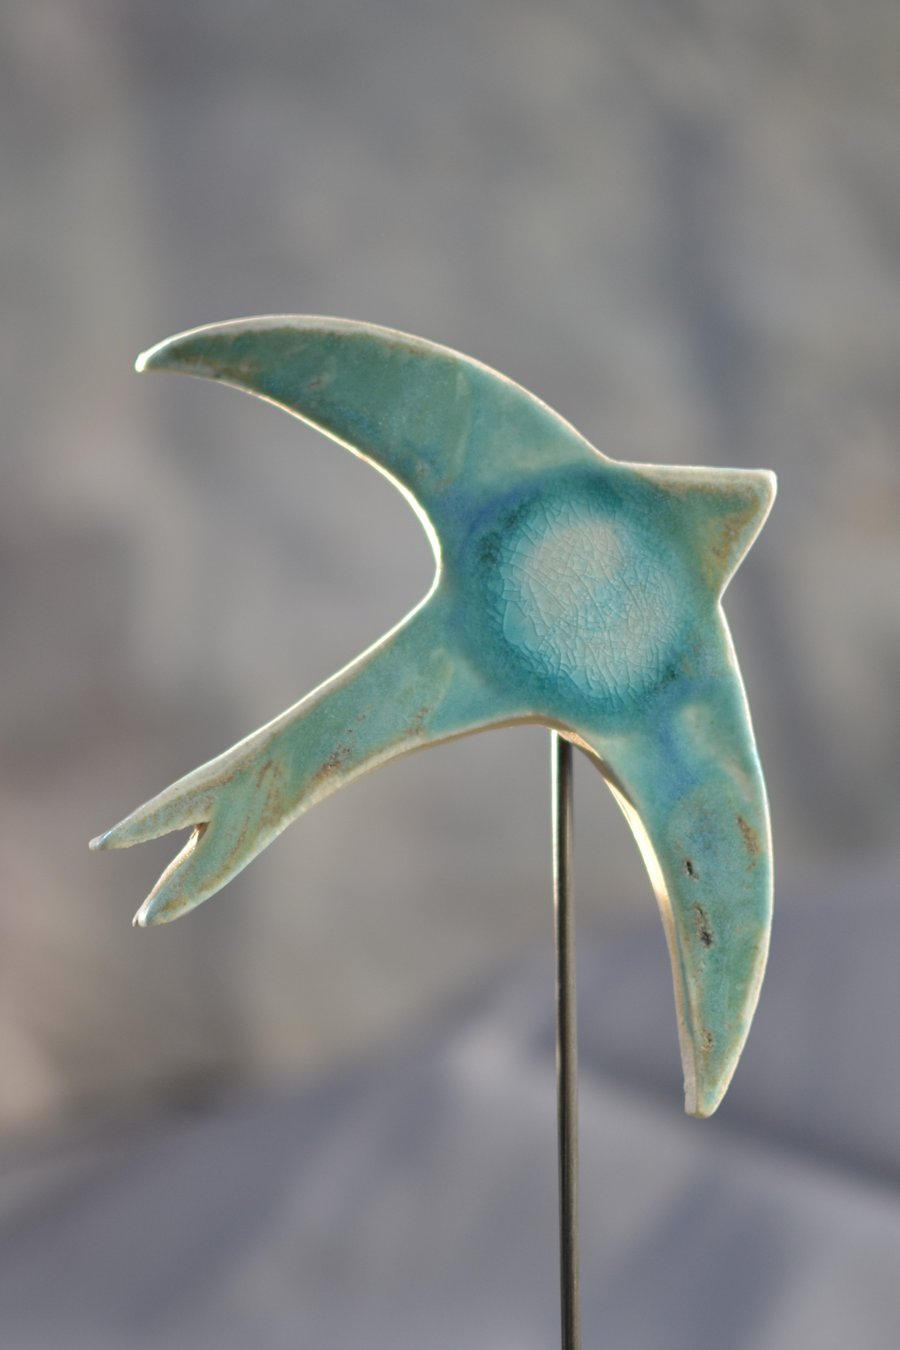 Single Swift  (No3)- A beautiful turquoise ceramic swift mounted on an oak block